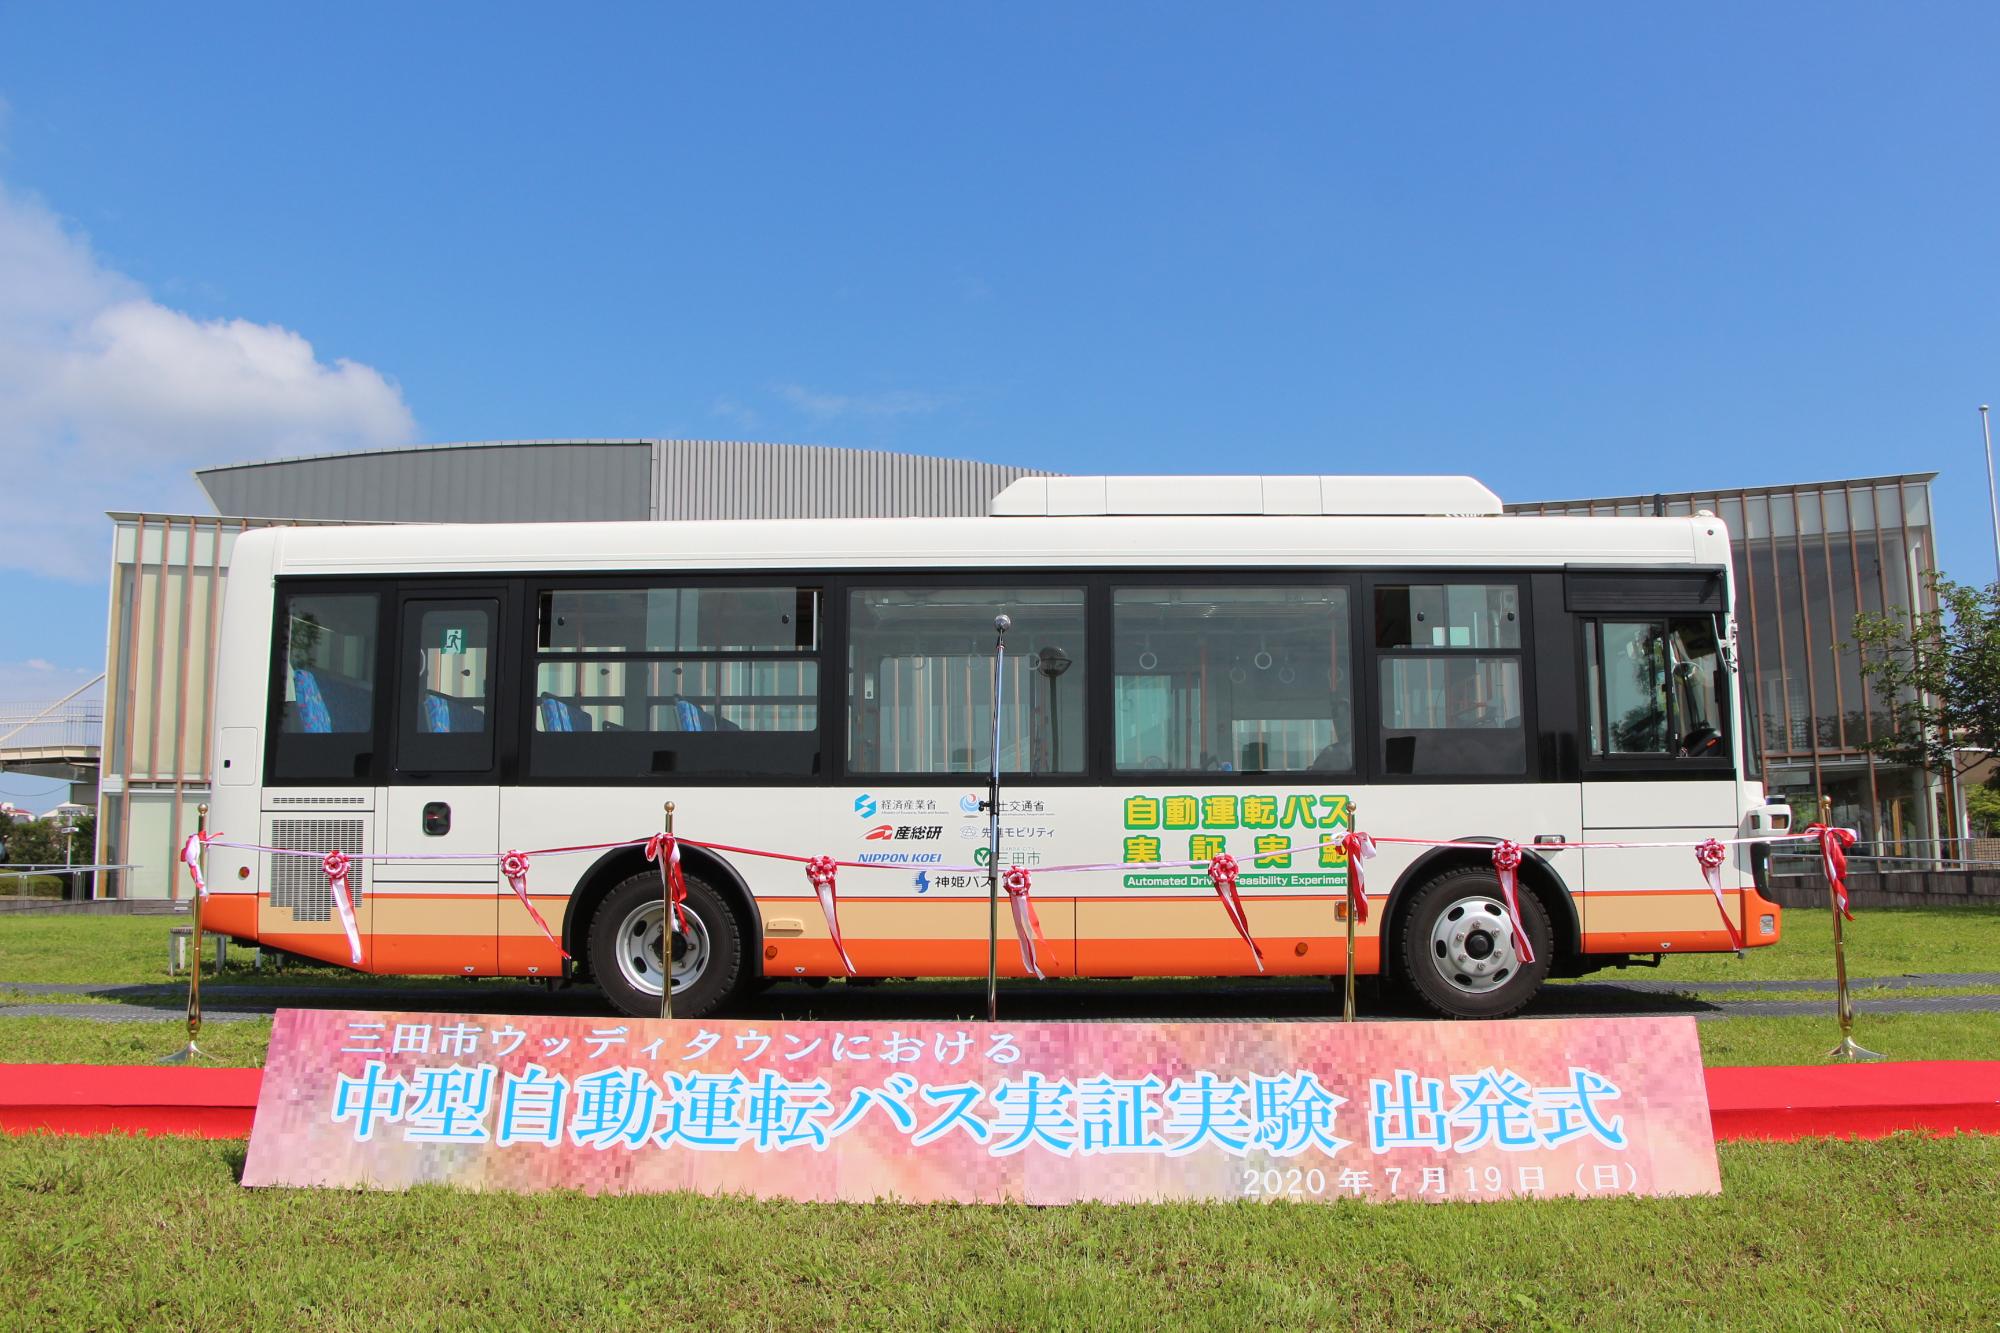 三田市ウッディタウンにおける中型自動運転バス実証実験 出発式における記念写真